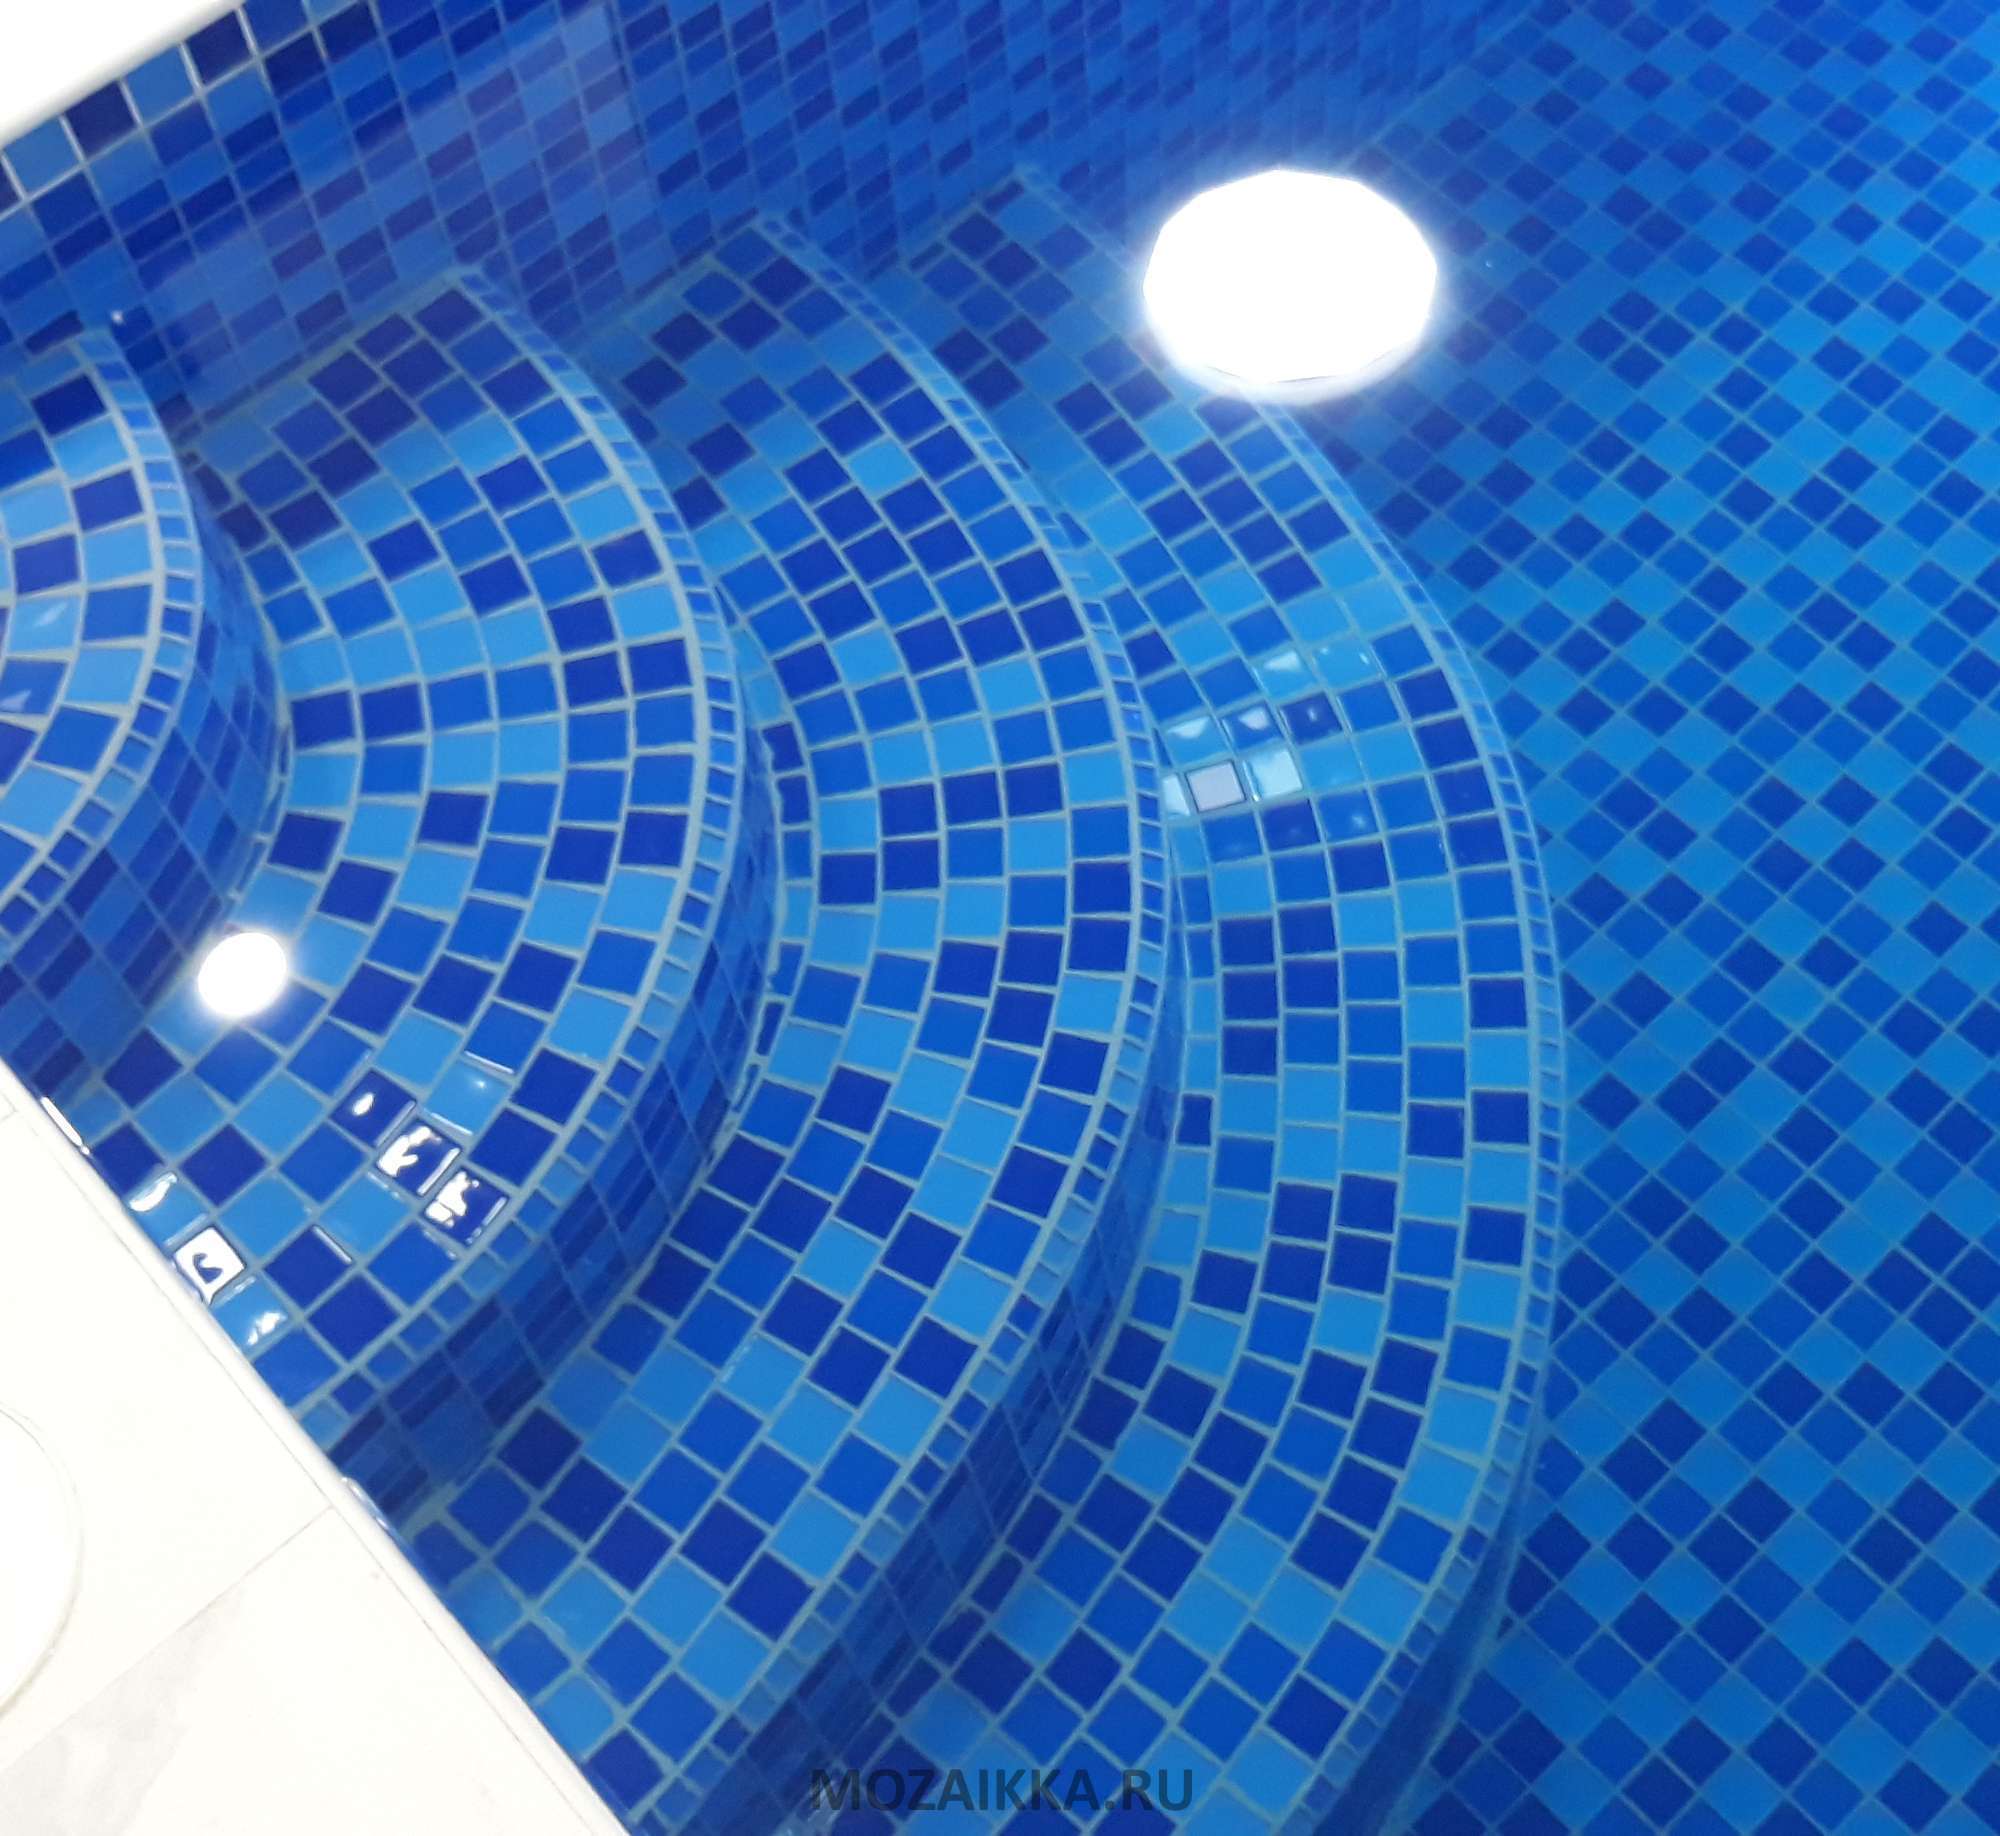 Отделка бассейна мозаикой своими руками: пошаговая инструкция по укладке стеклянной мозаики для бассейна, плюсы и минусы